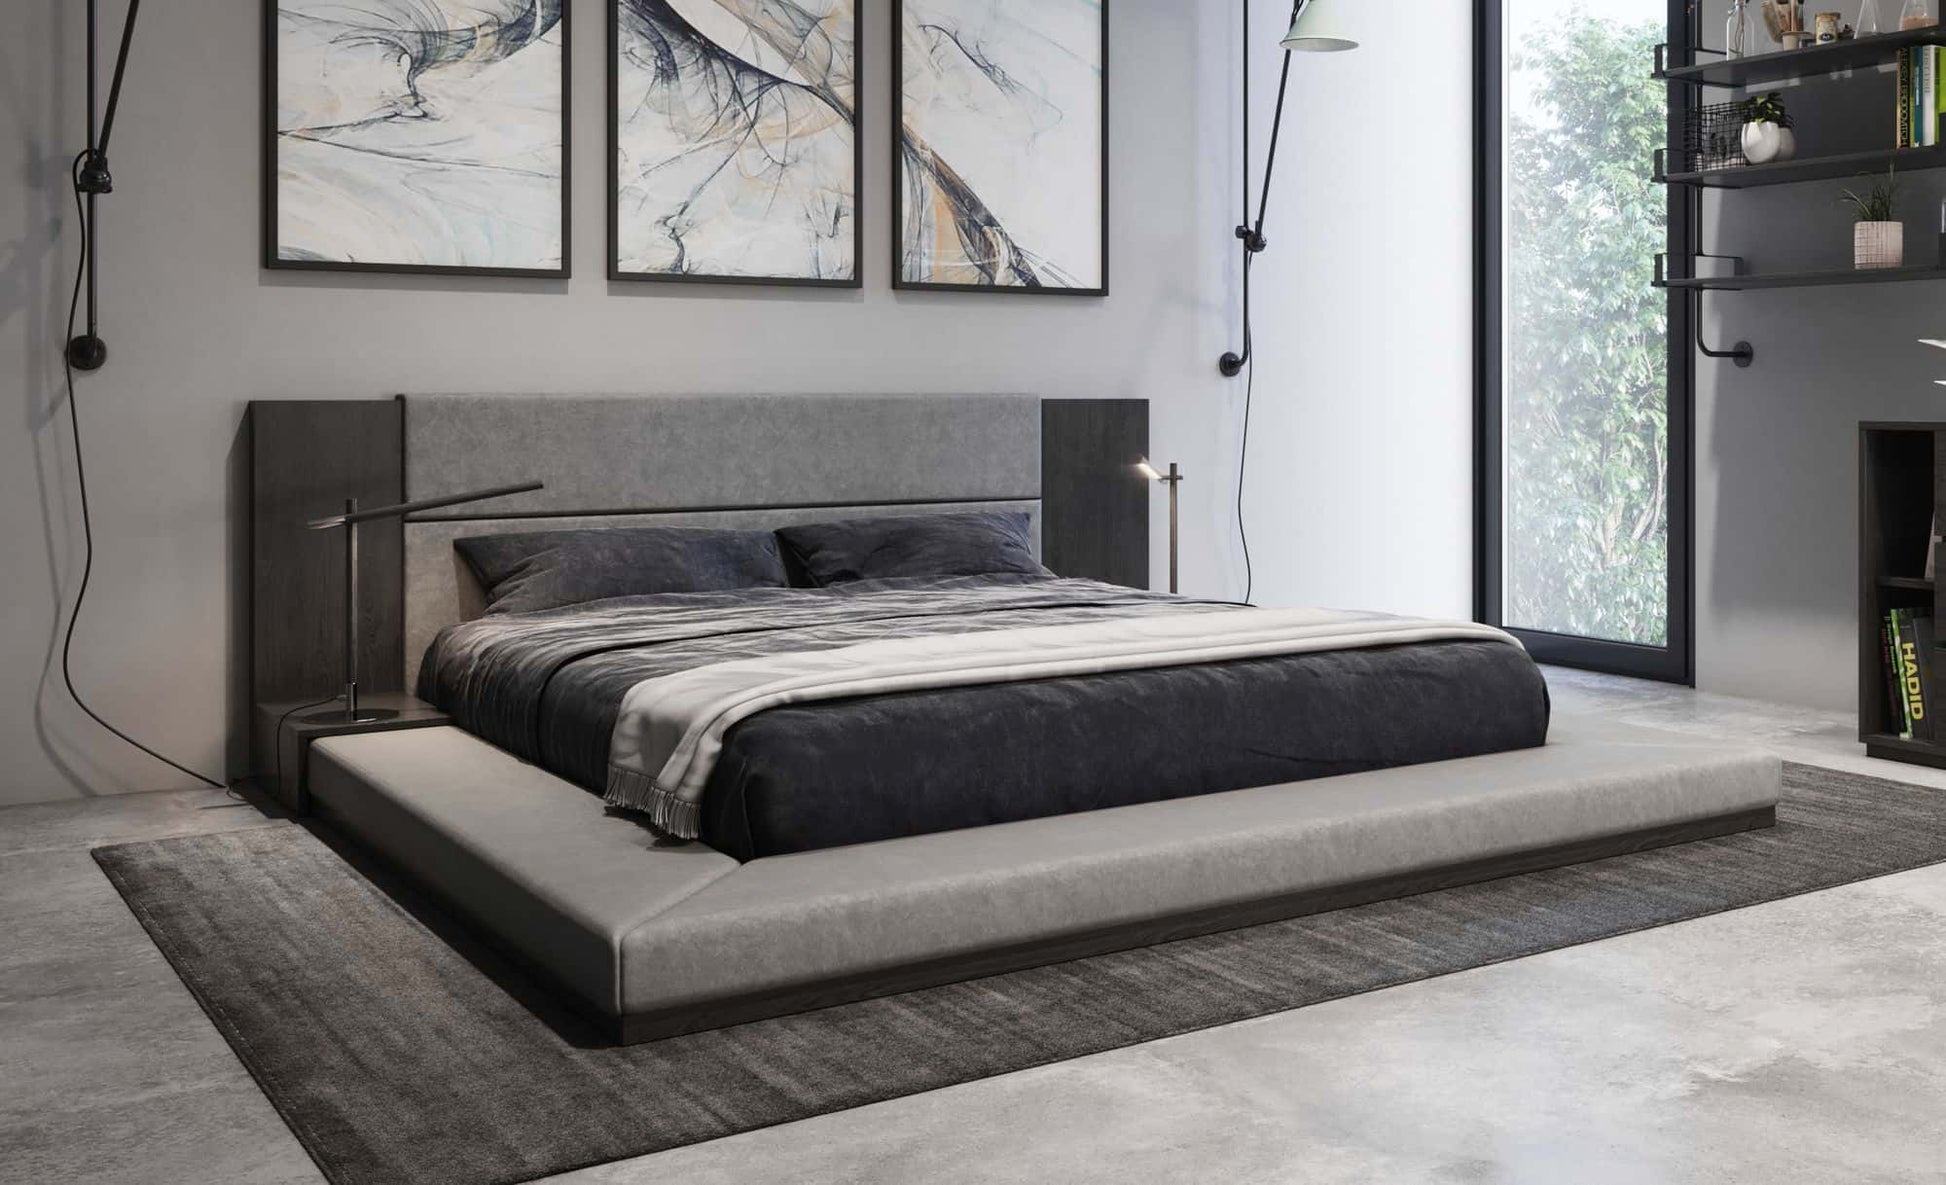 VIG Furniture Nova Domus Jagger Grey Bed